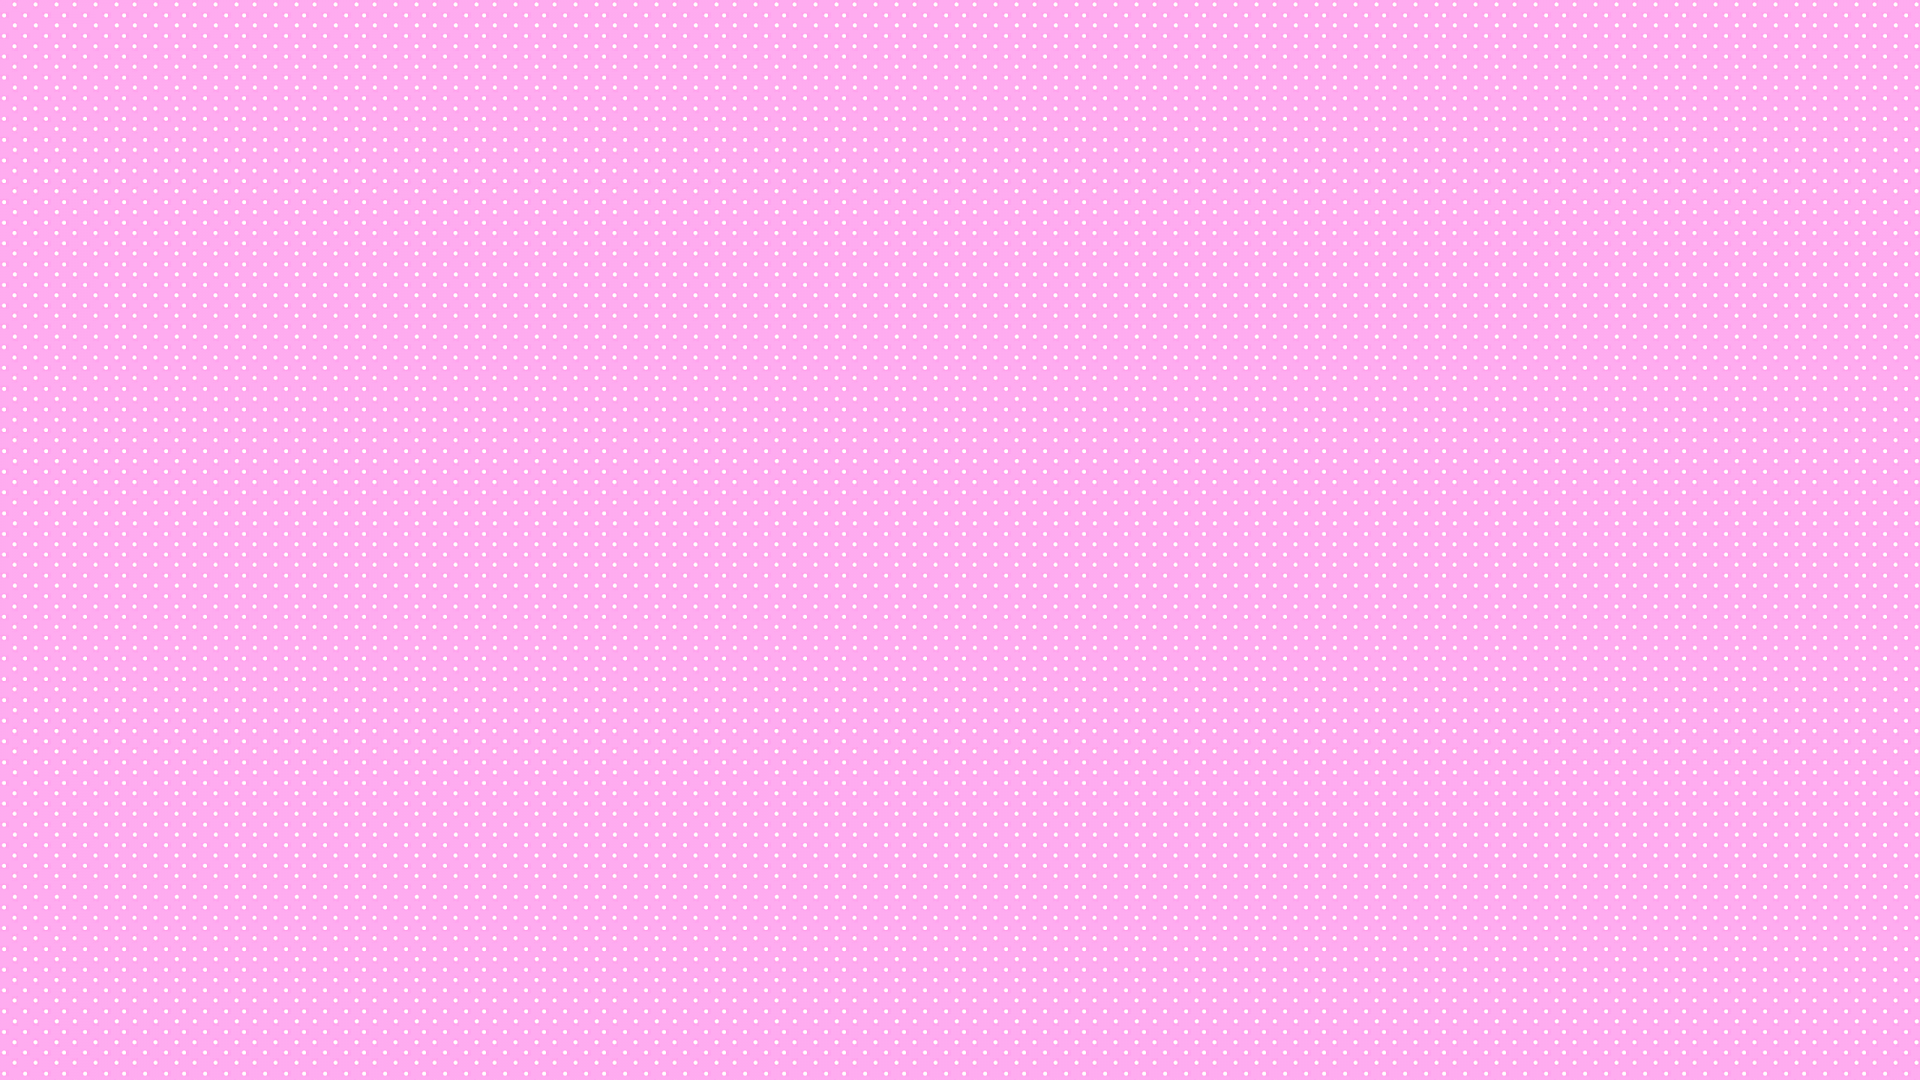 Free download Get Pastel Pink Background Tumblr Pastel tumblr